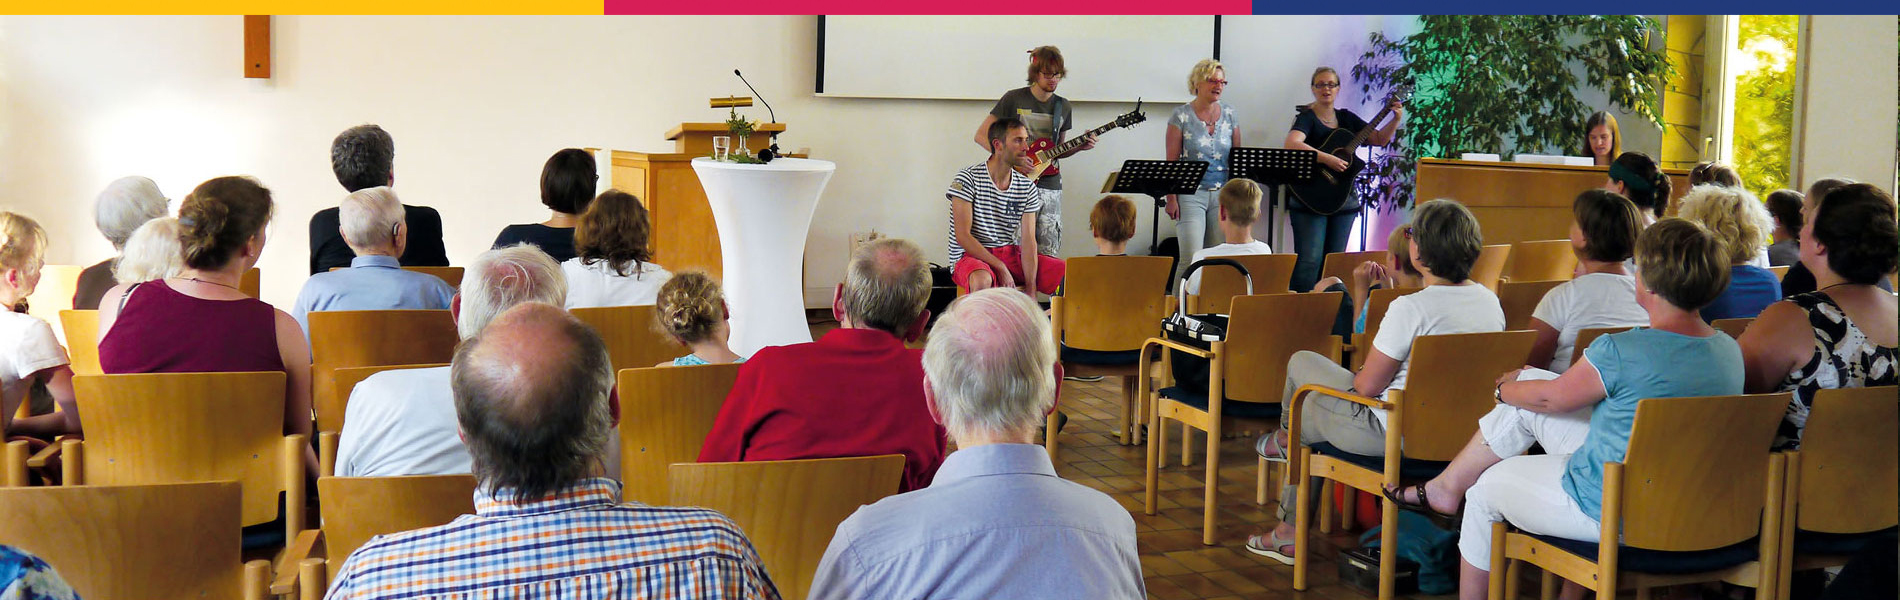 Gottesdienst | Landeskirchliche Gemeinschaft Osnabrück